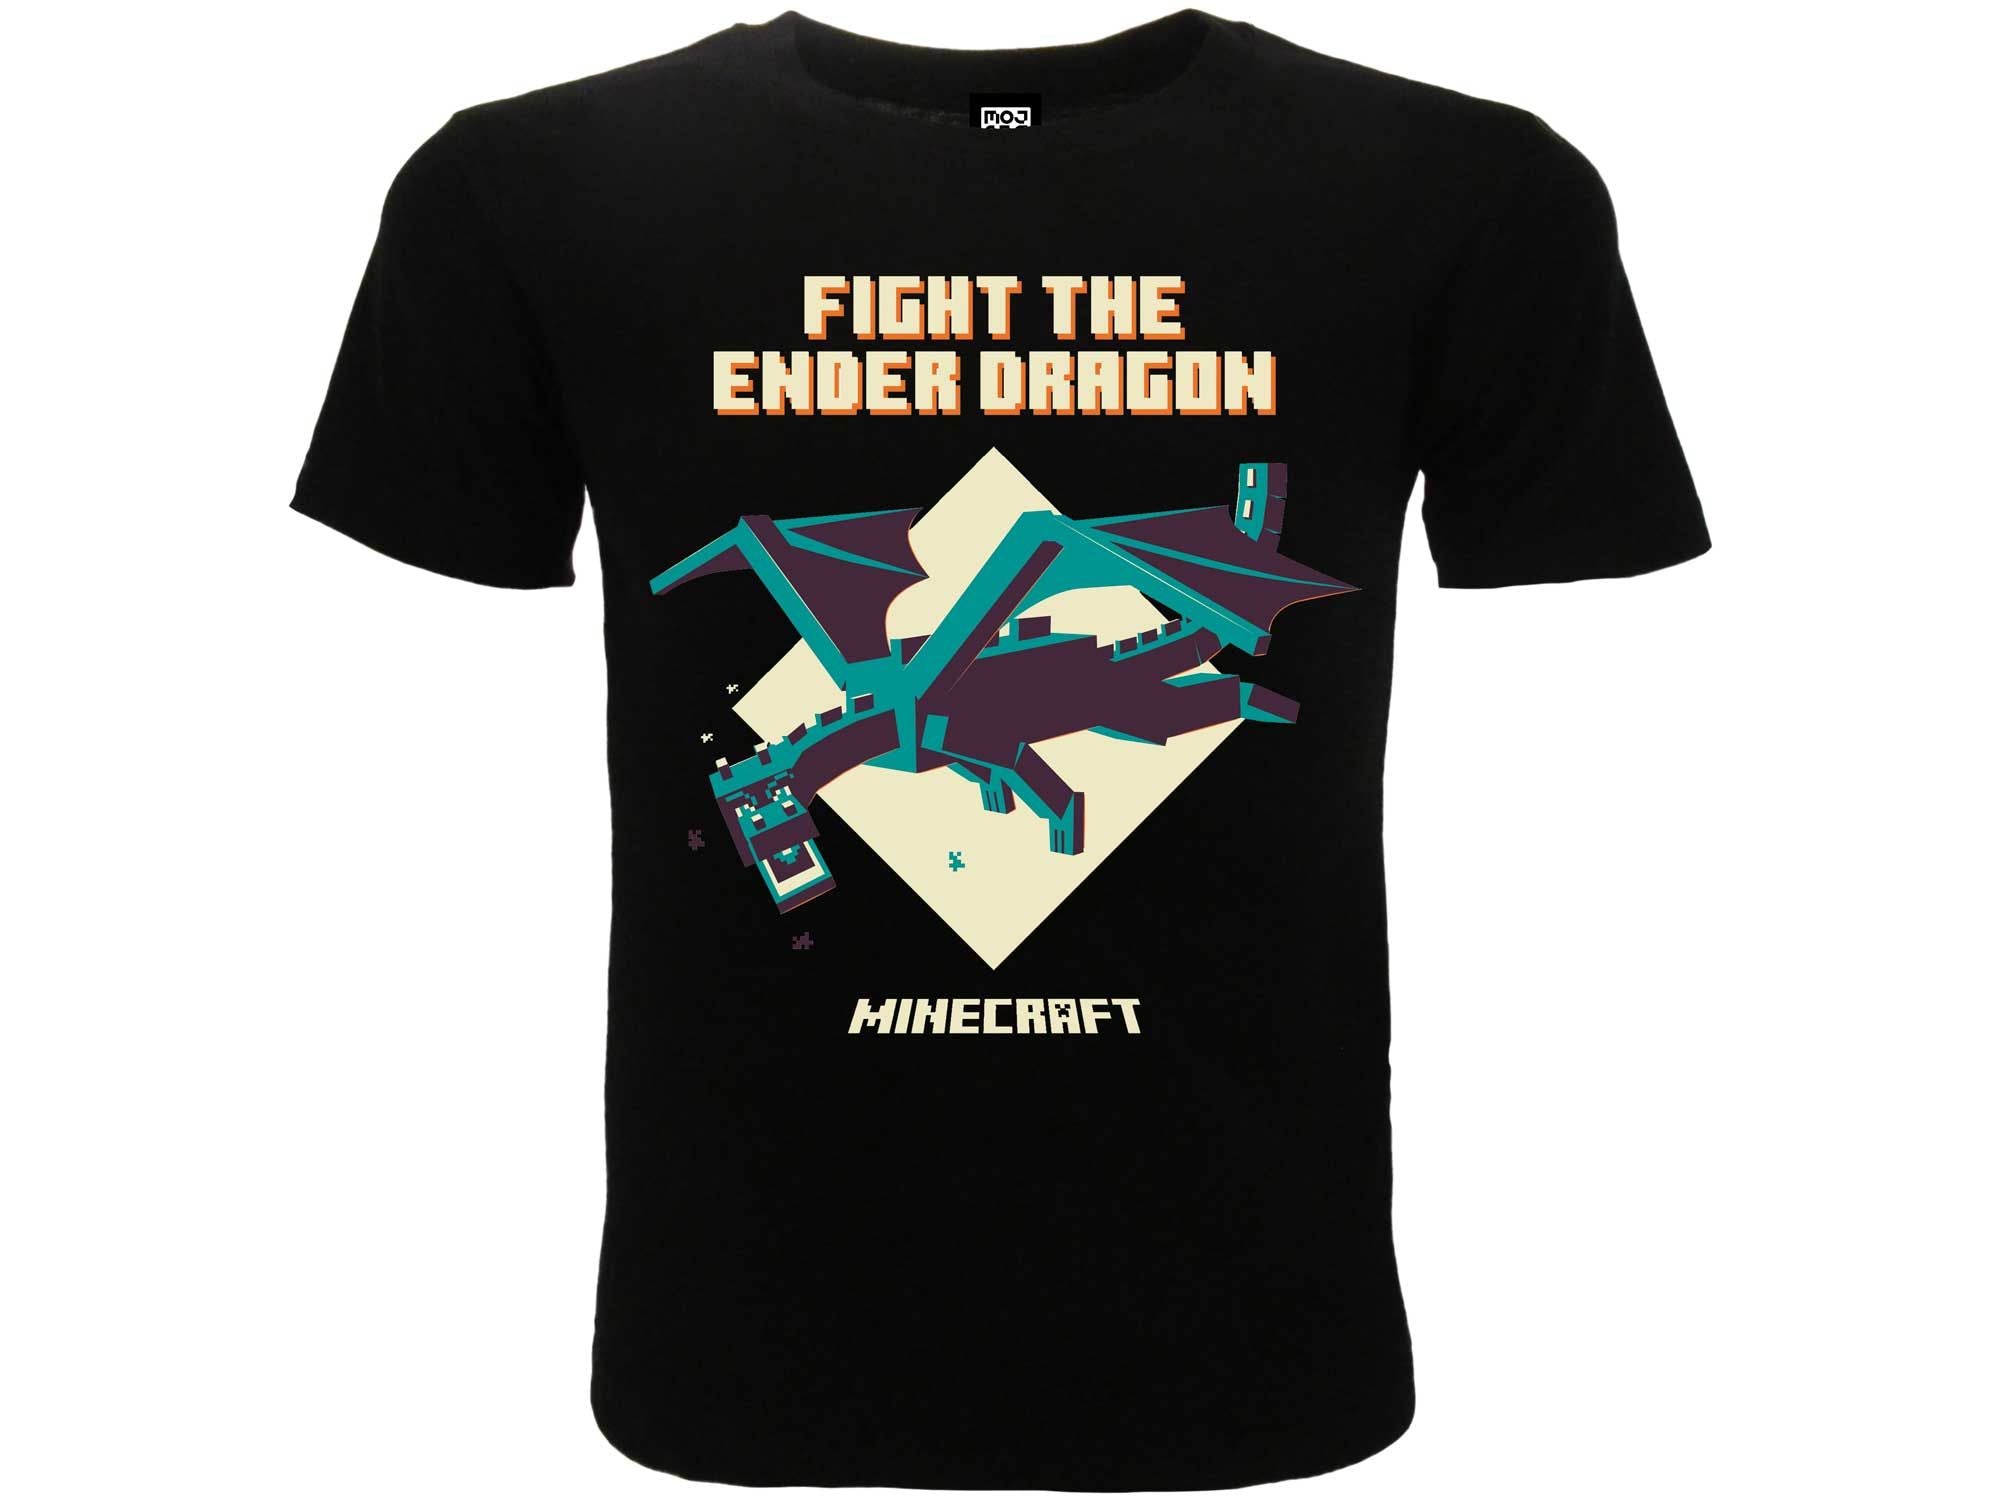 MINECRAFT - "Fight the ender dragon" T-shirt 14/15 anni nera - Disponibile in 2/3 giorni lavorativi GED